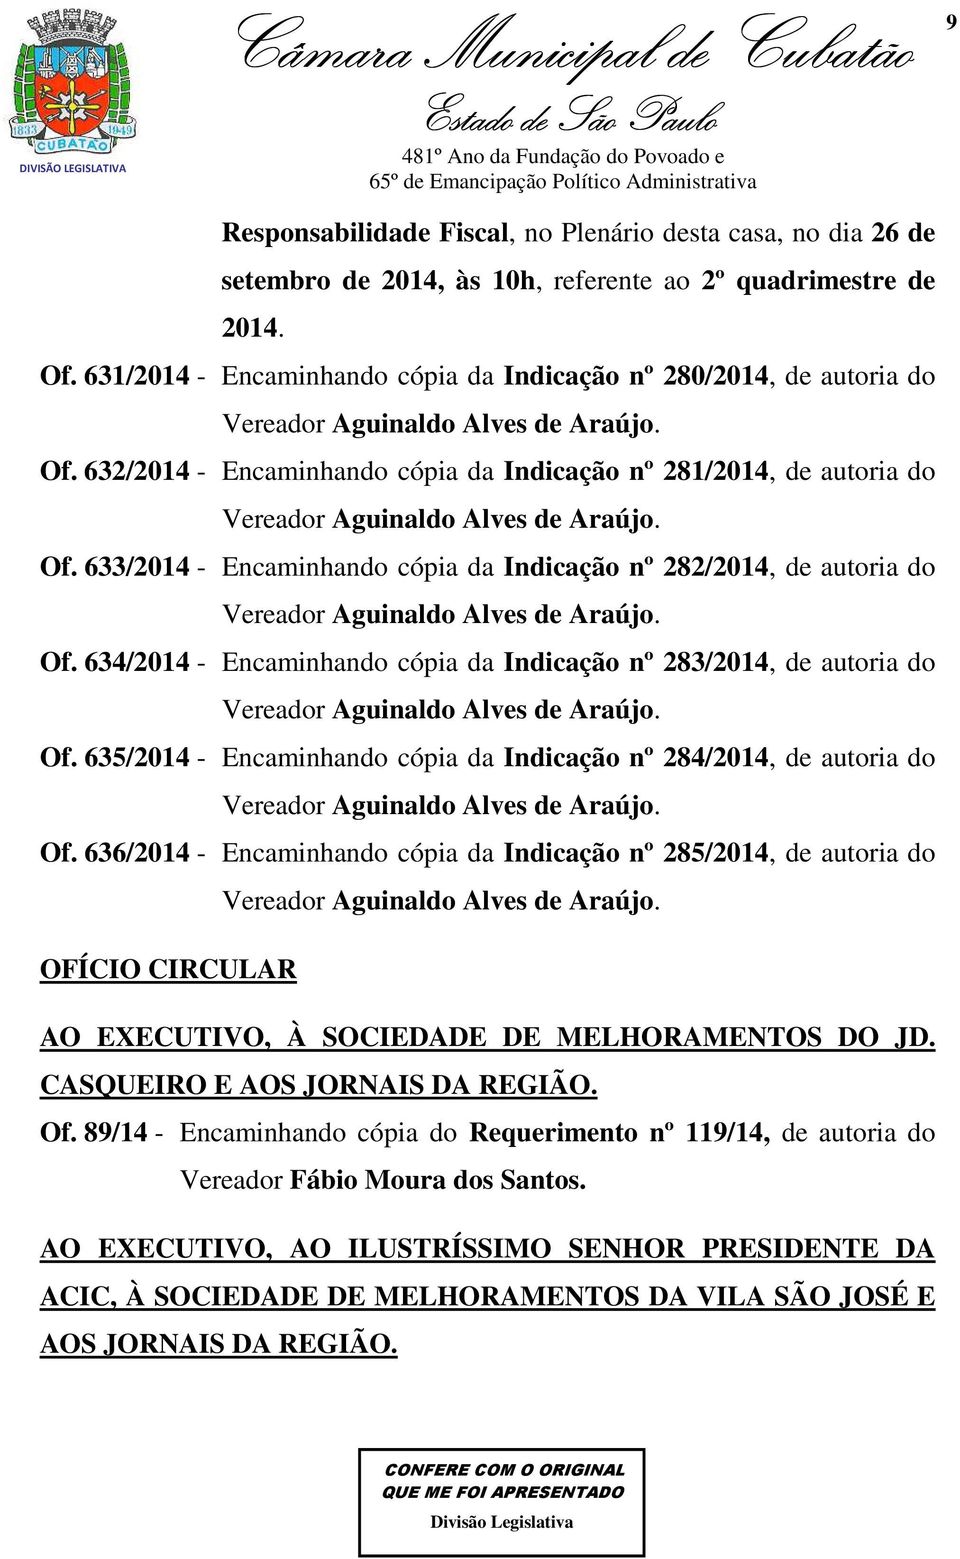 632/2014 - Encaminhando cópia da Indicação nº 281/2014, de autoria do Vereador Aguinaldo Alves de Araújo. Of.